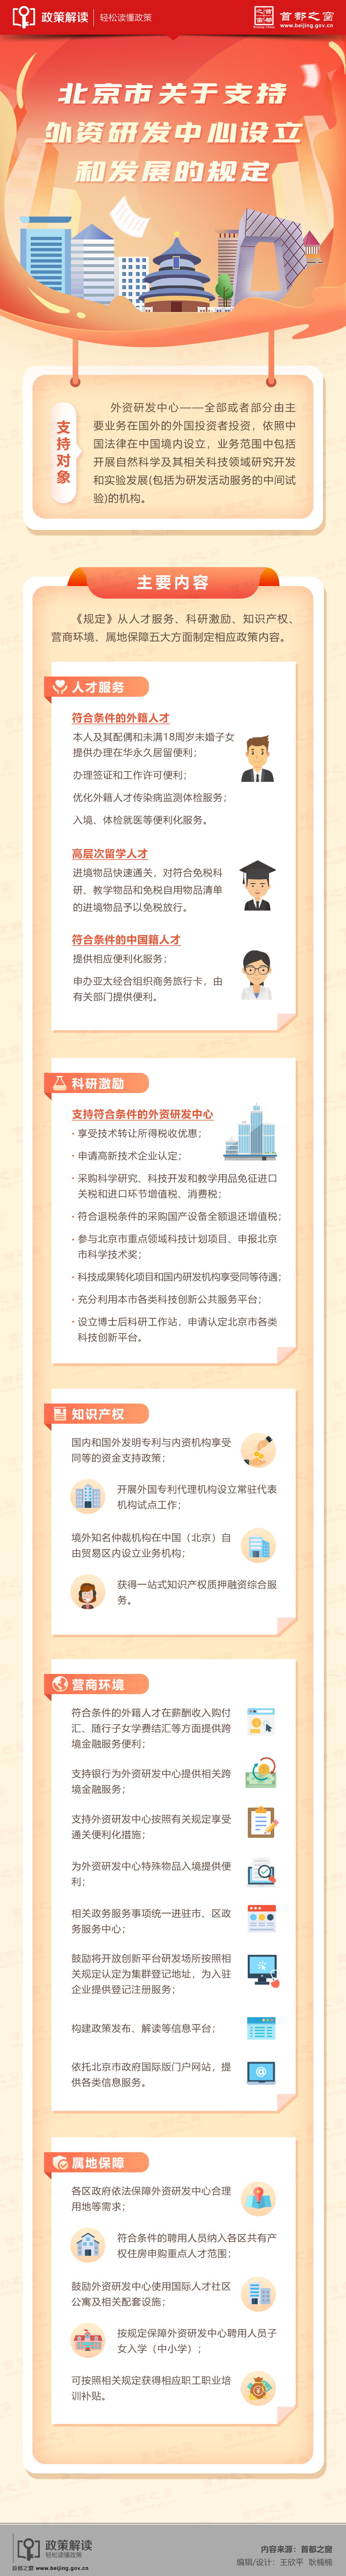 4.14圖解：《北京市關於支援外資研發中心設立和發展的規定》.jpg